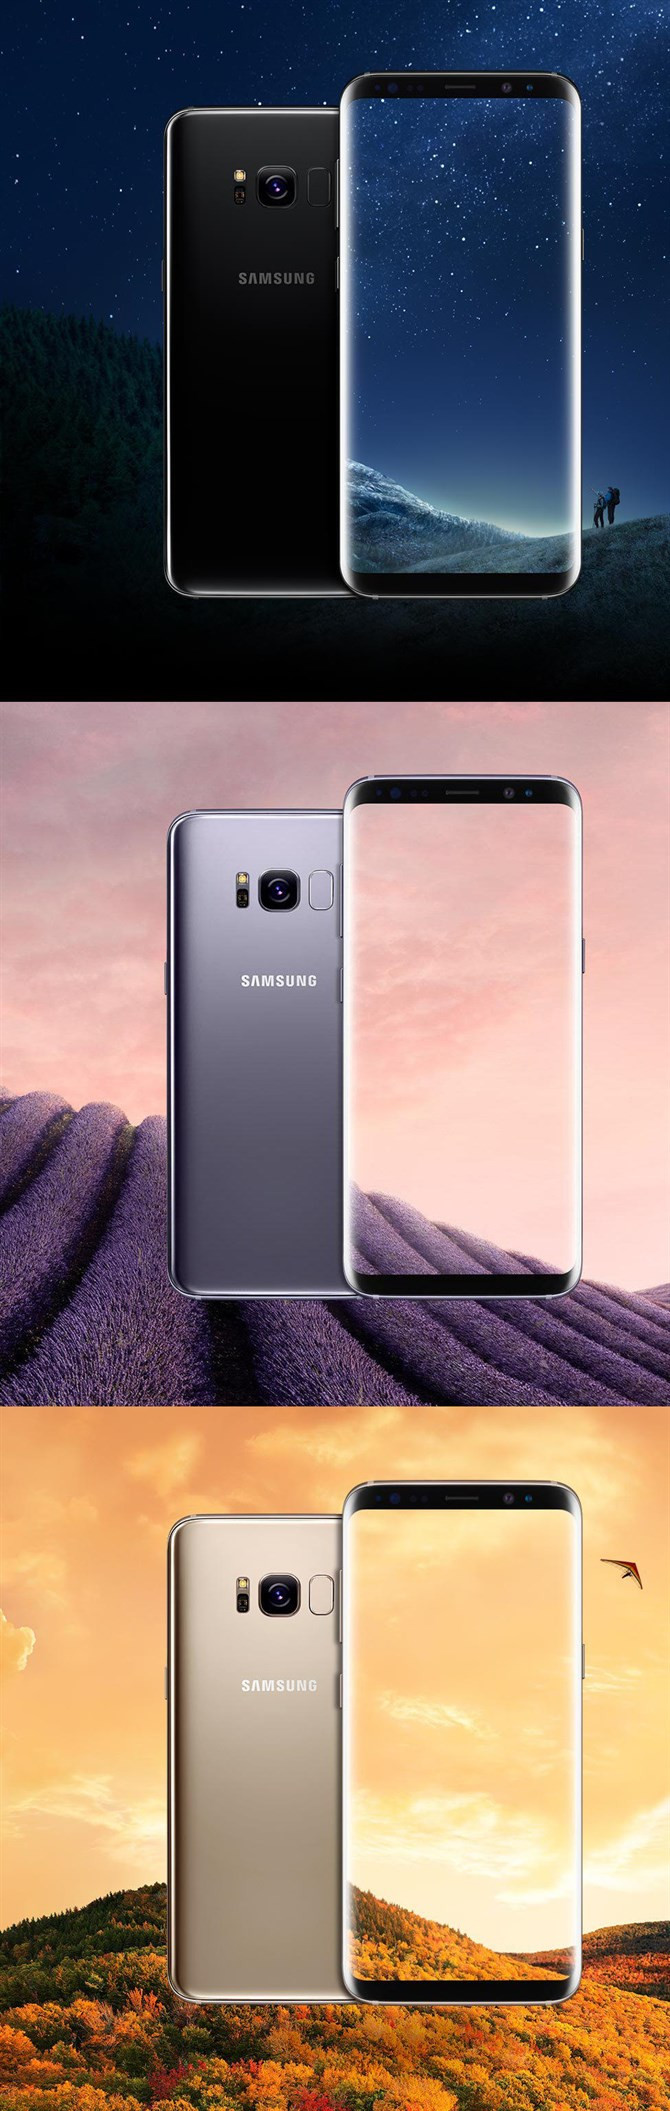 Samsung Galaxy S8 w kolorach Black Sky, Orchid Grey i złotym